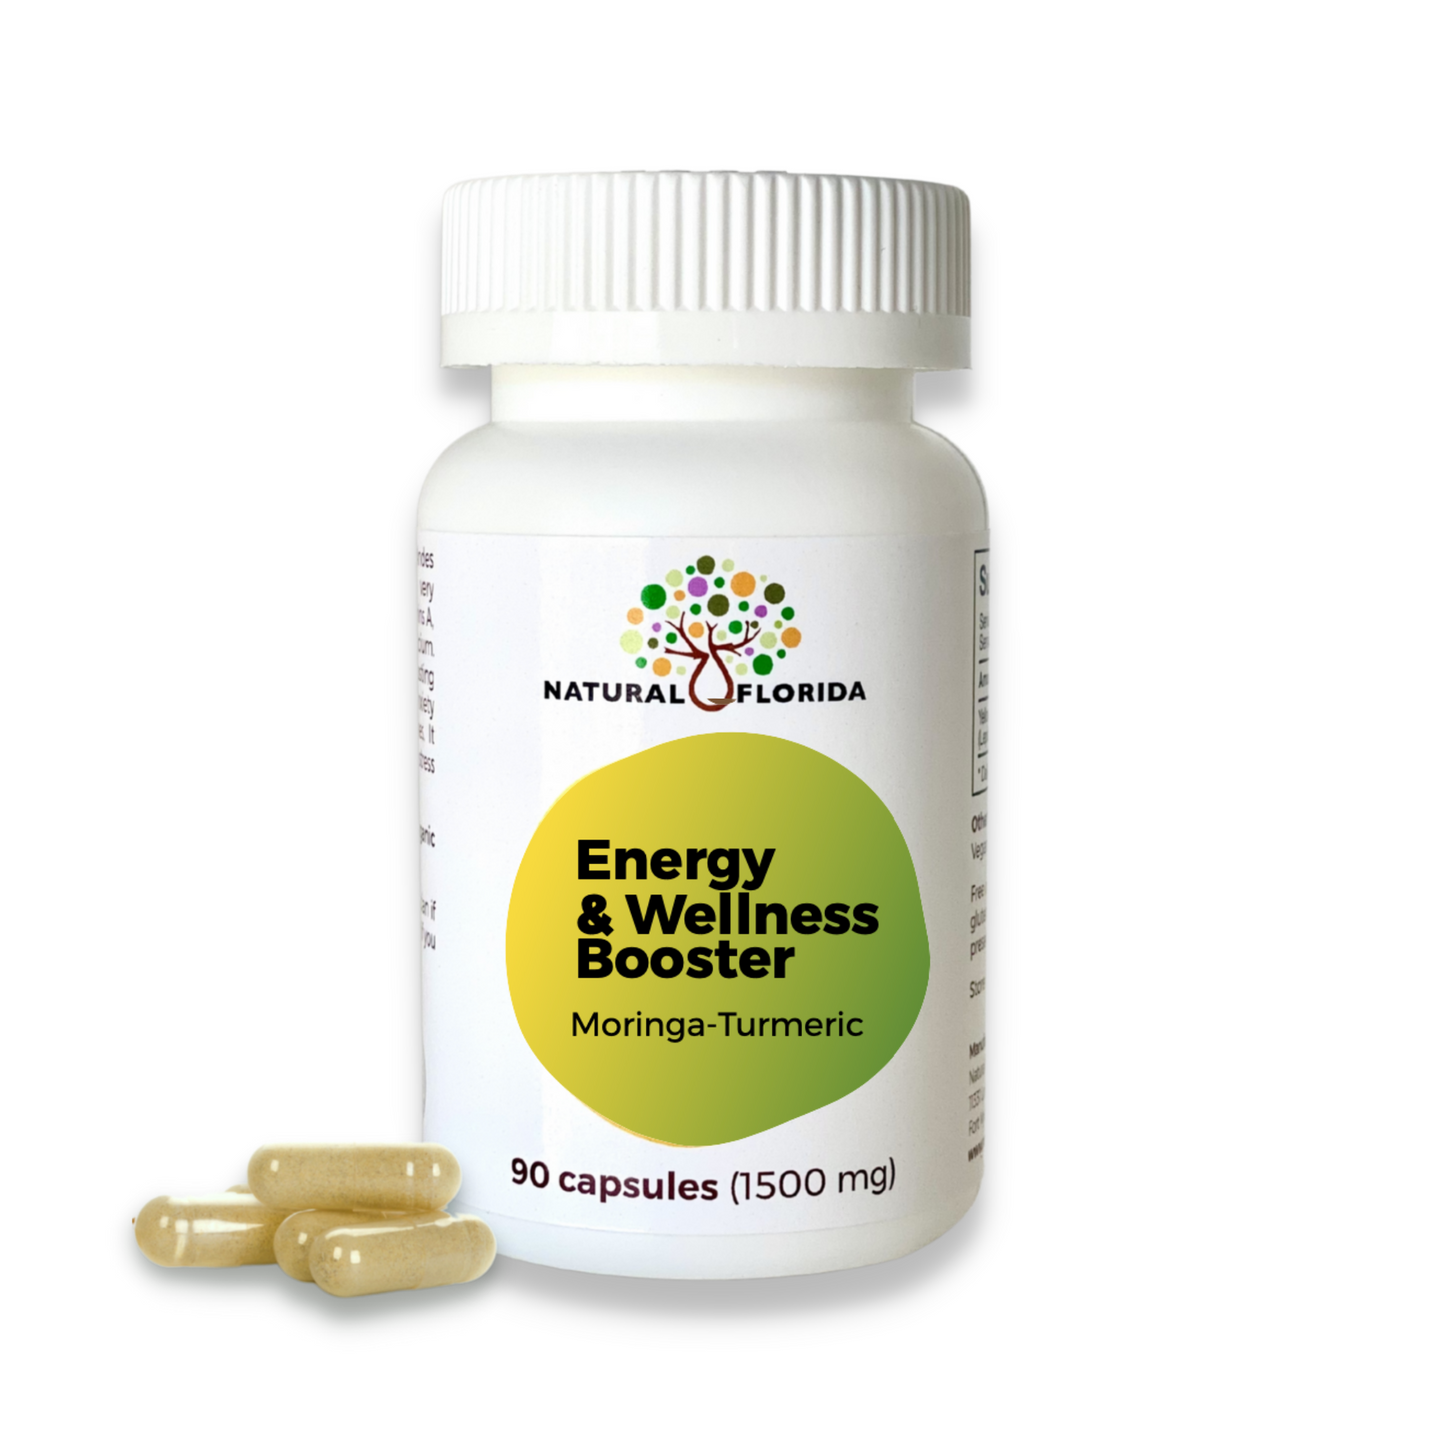 Energy & Wellness Booster 90 vegan capsules. Natural Florida